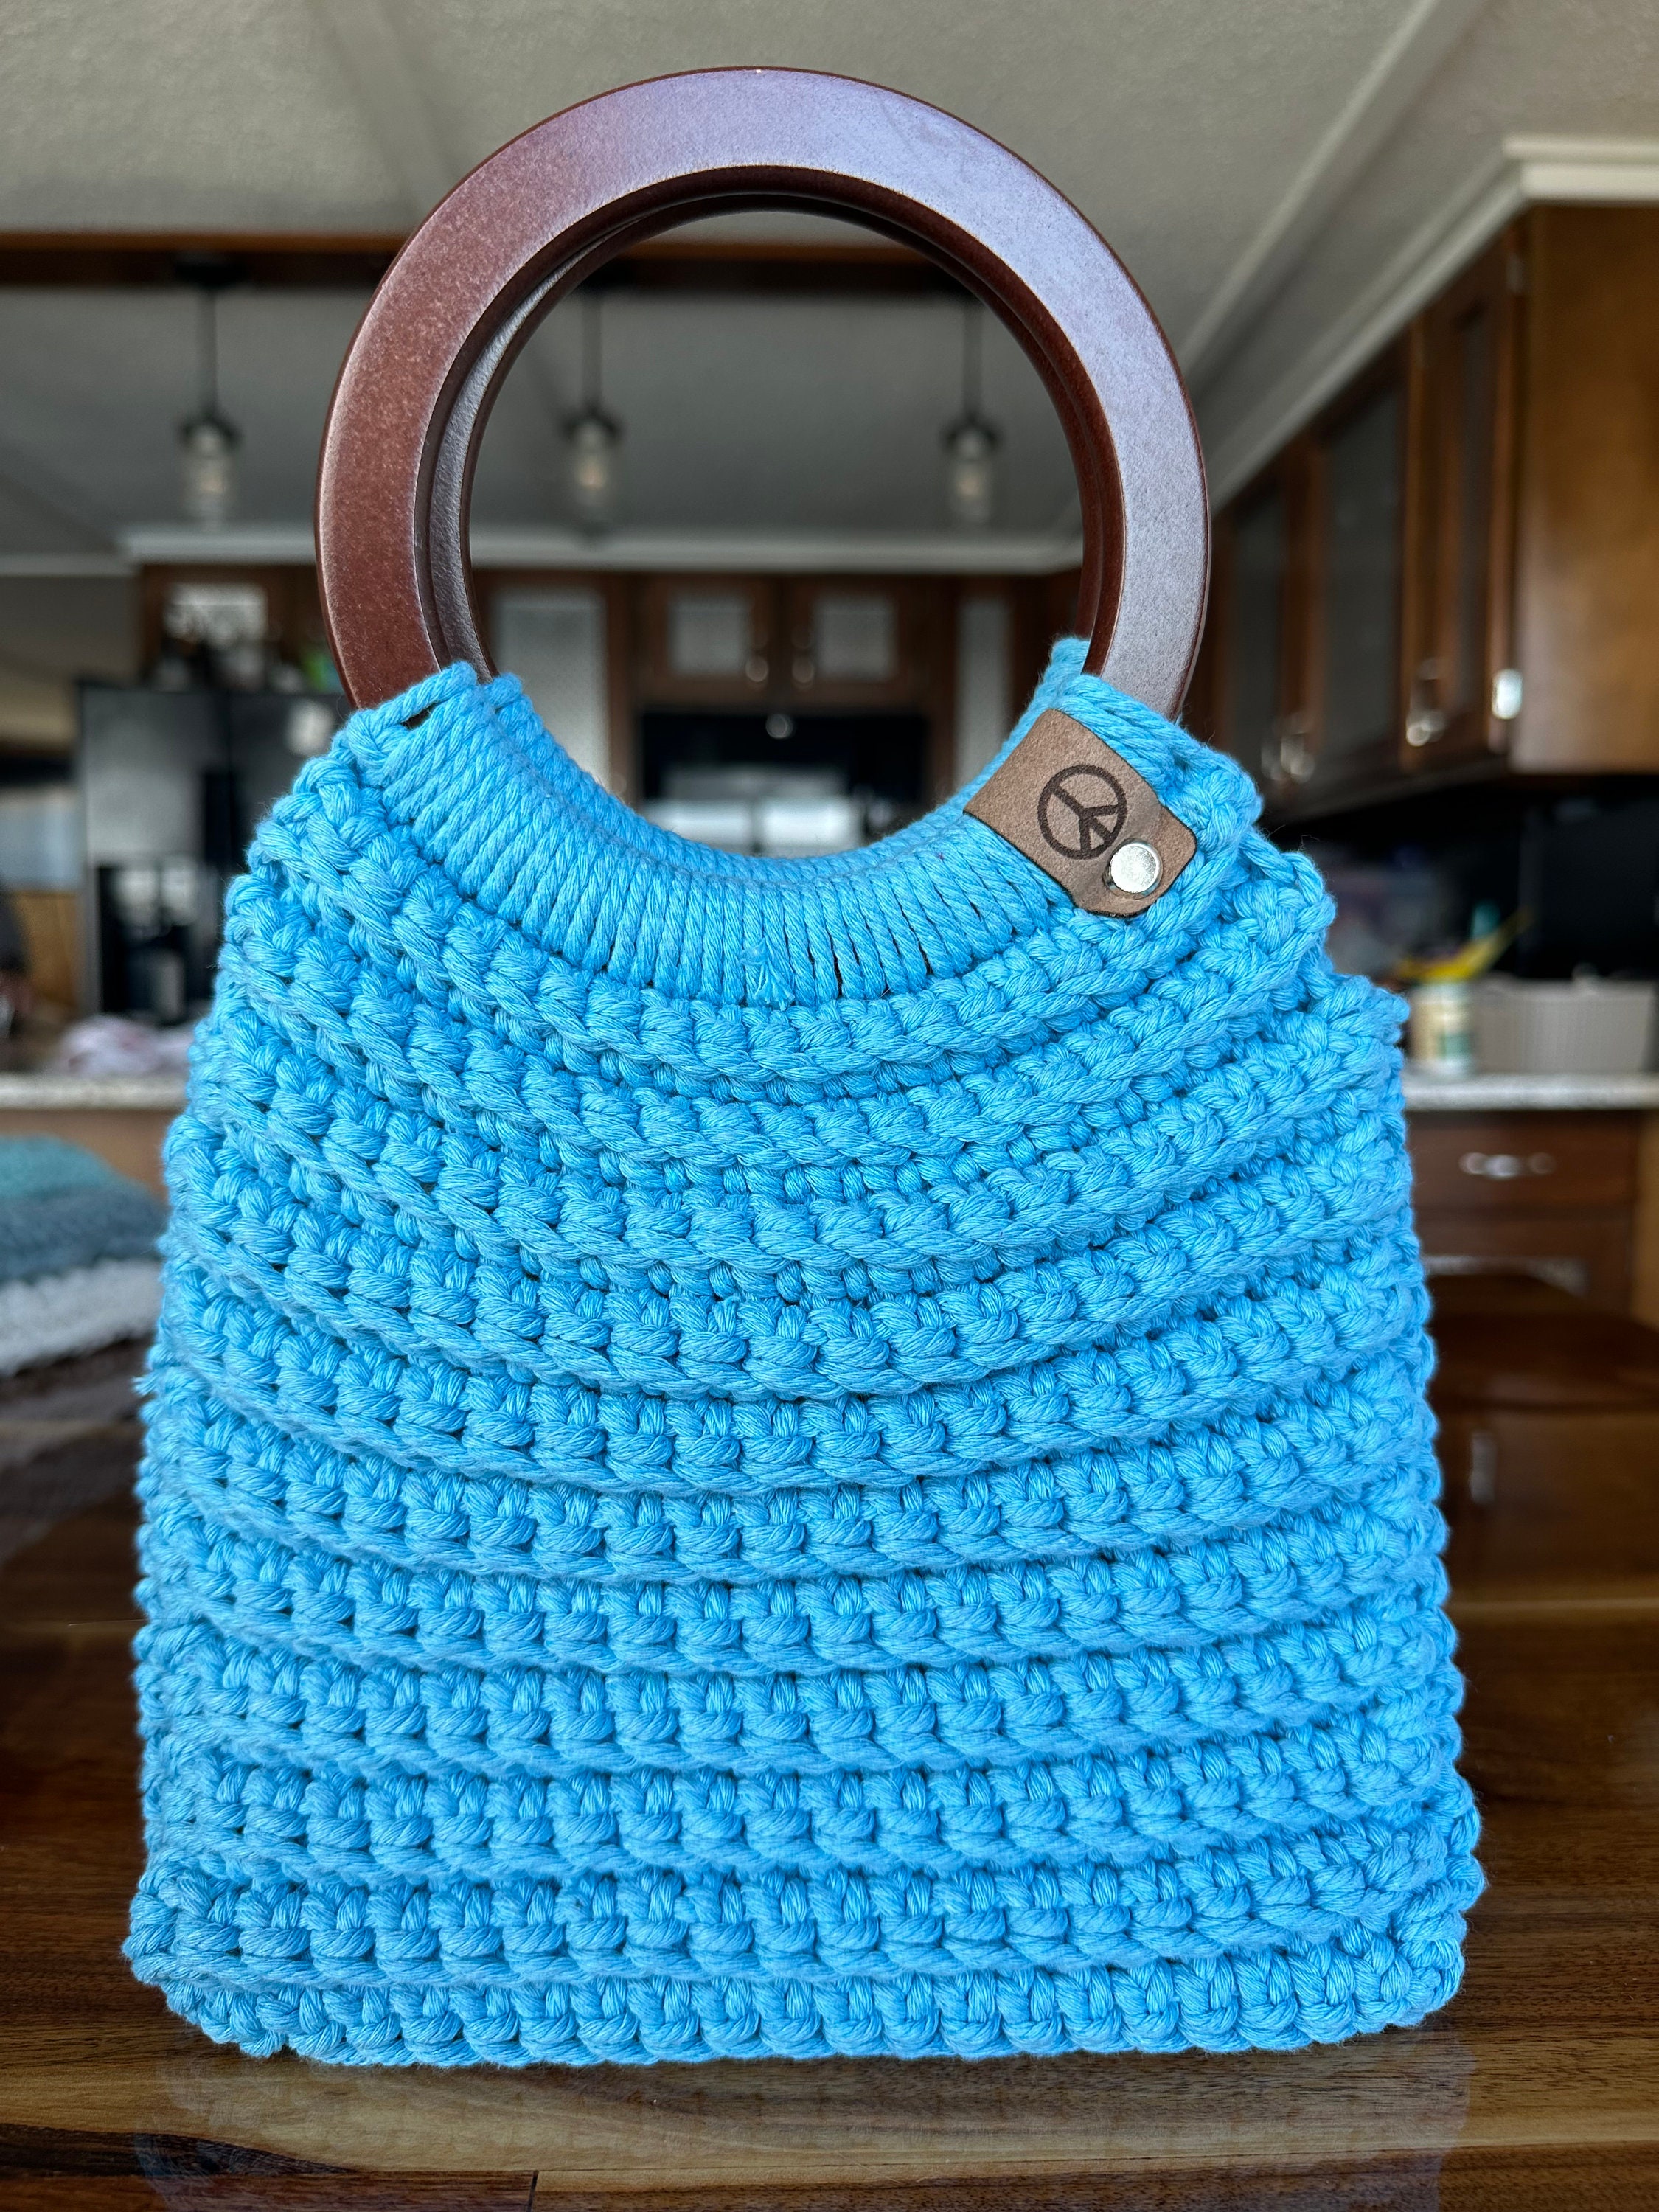 10 Crochet Bag Handles - Crochet News